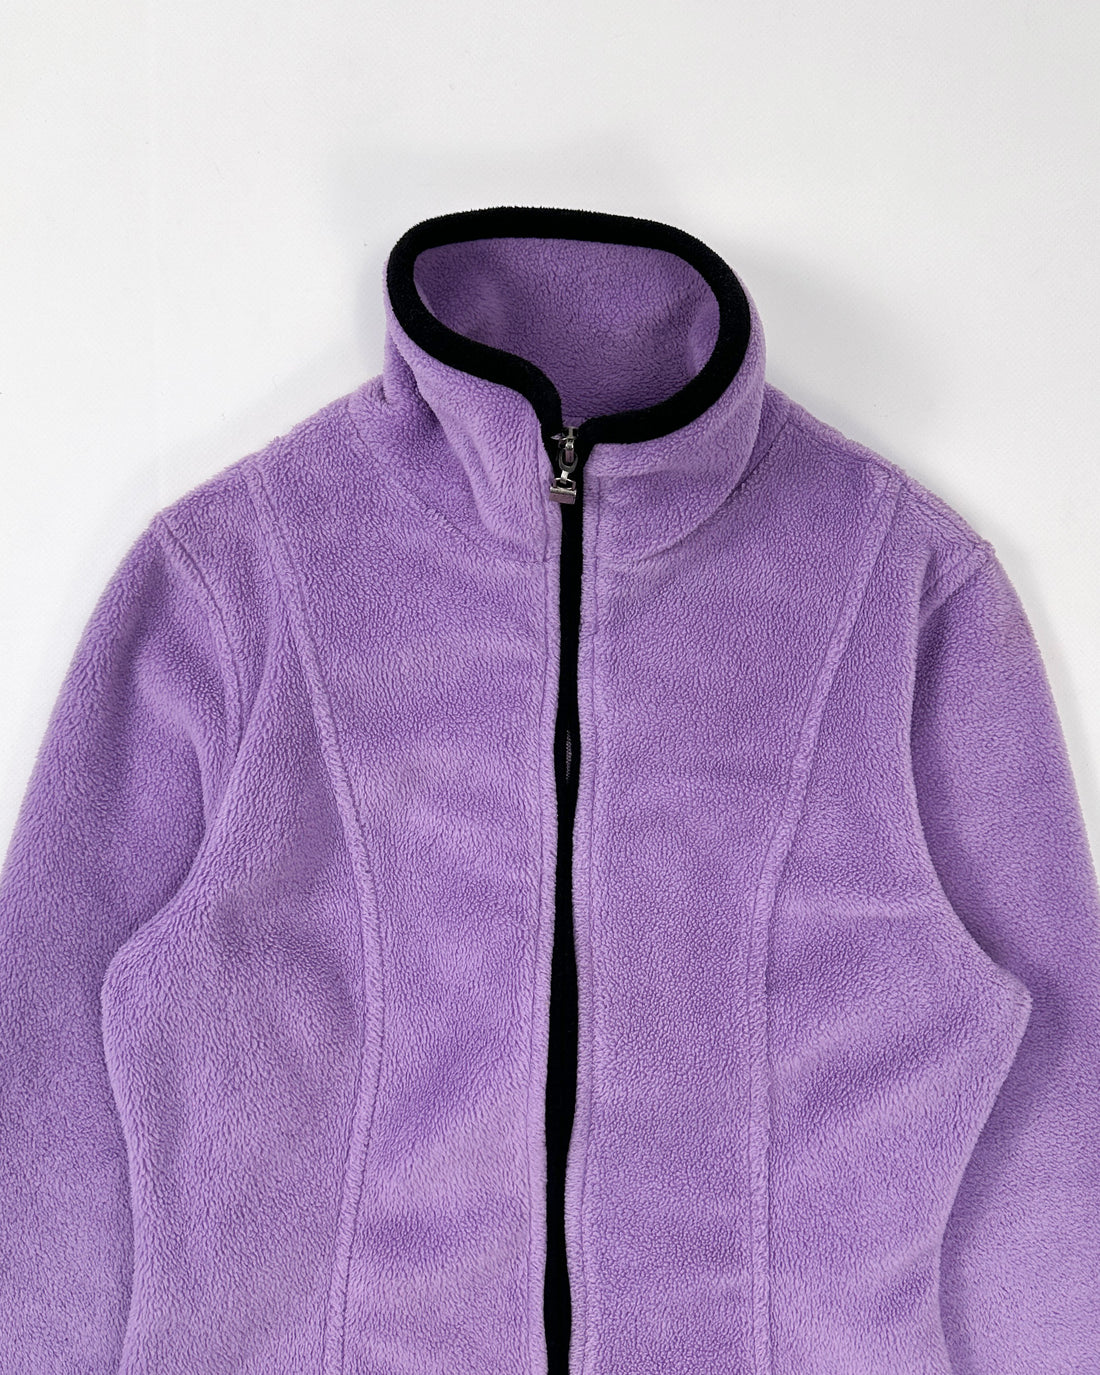 DKNY Cropped Purple Polar Fleece 1990's